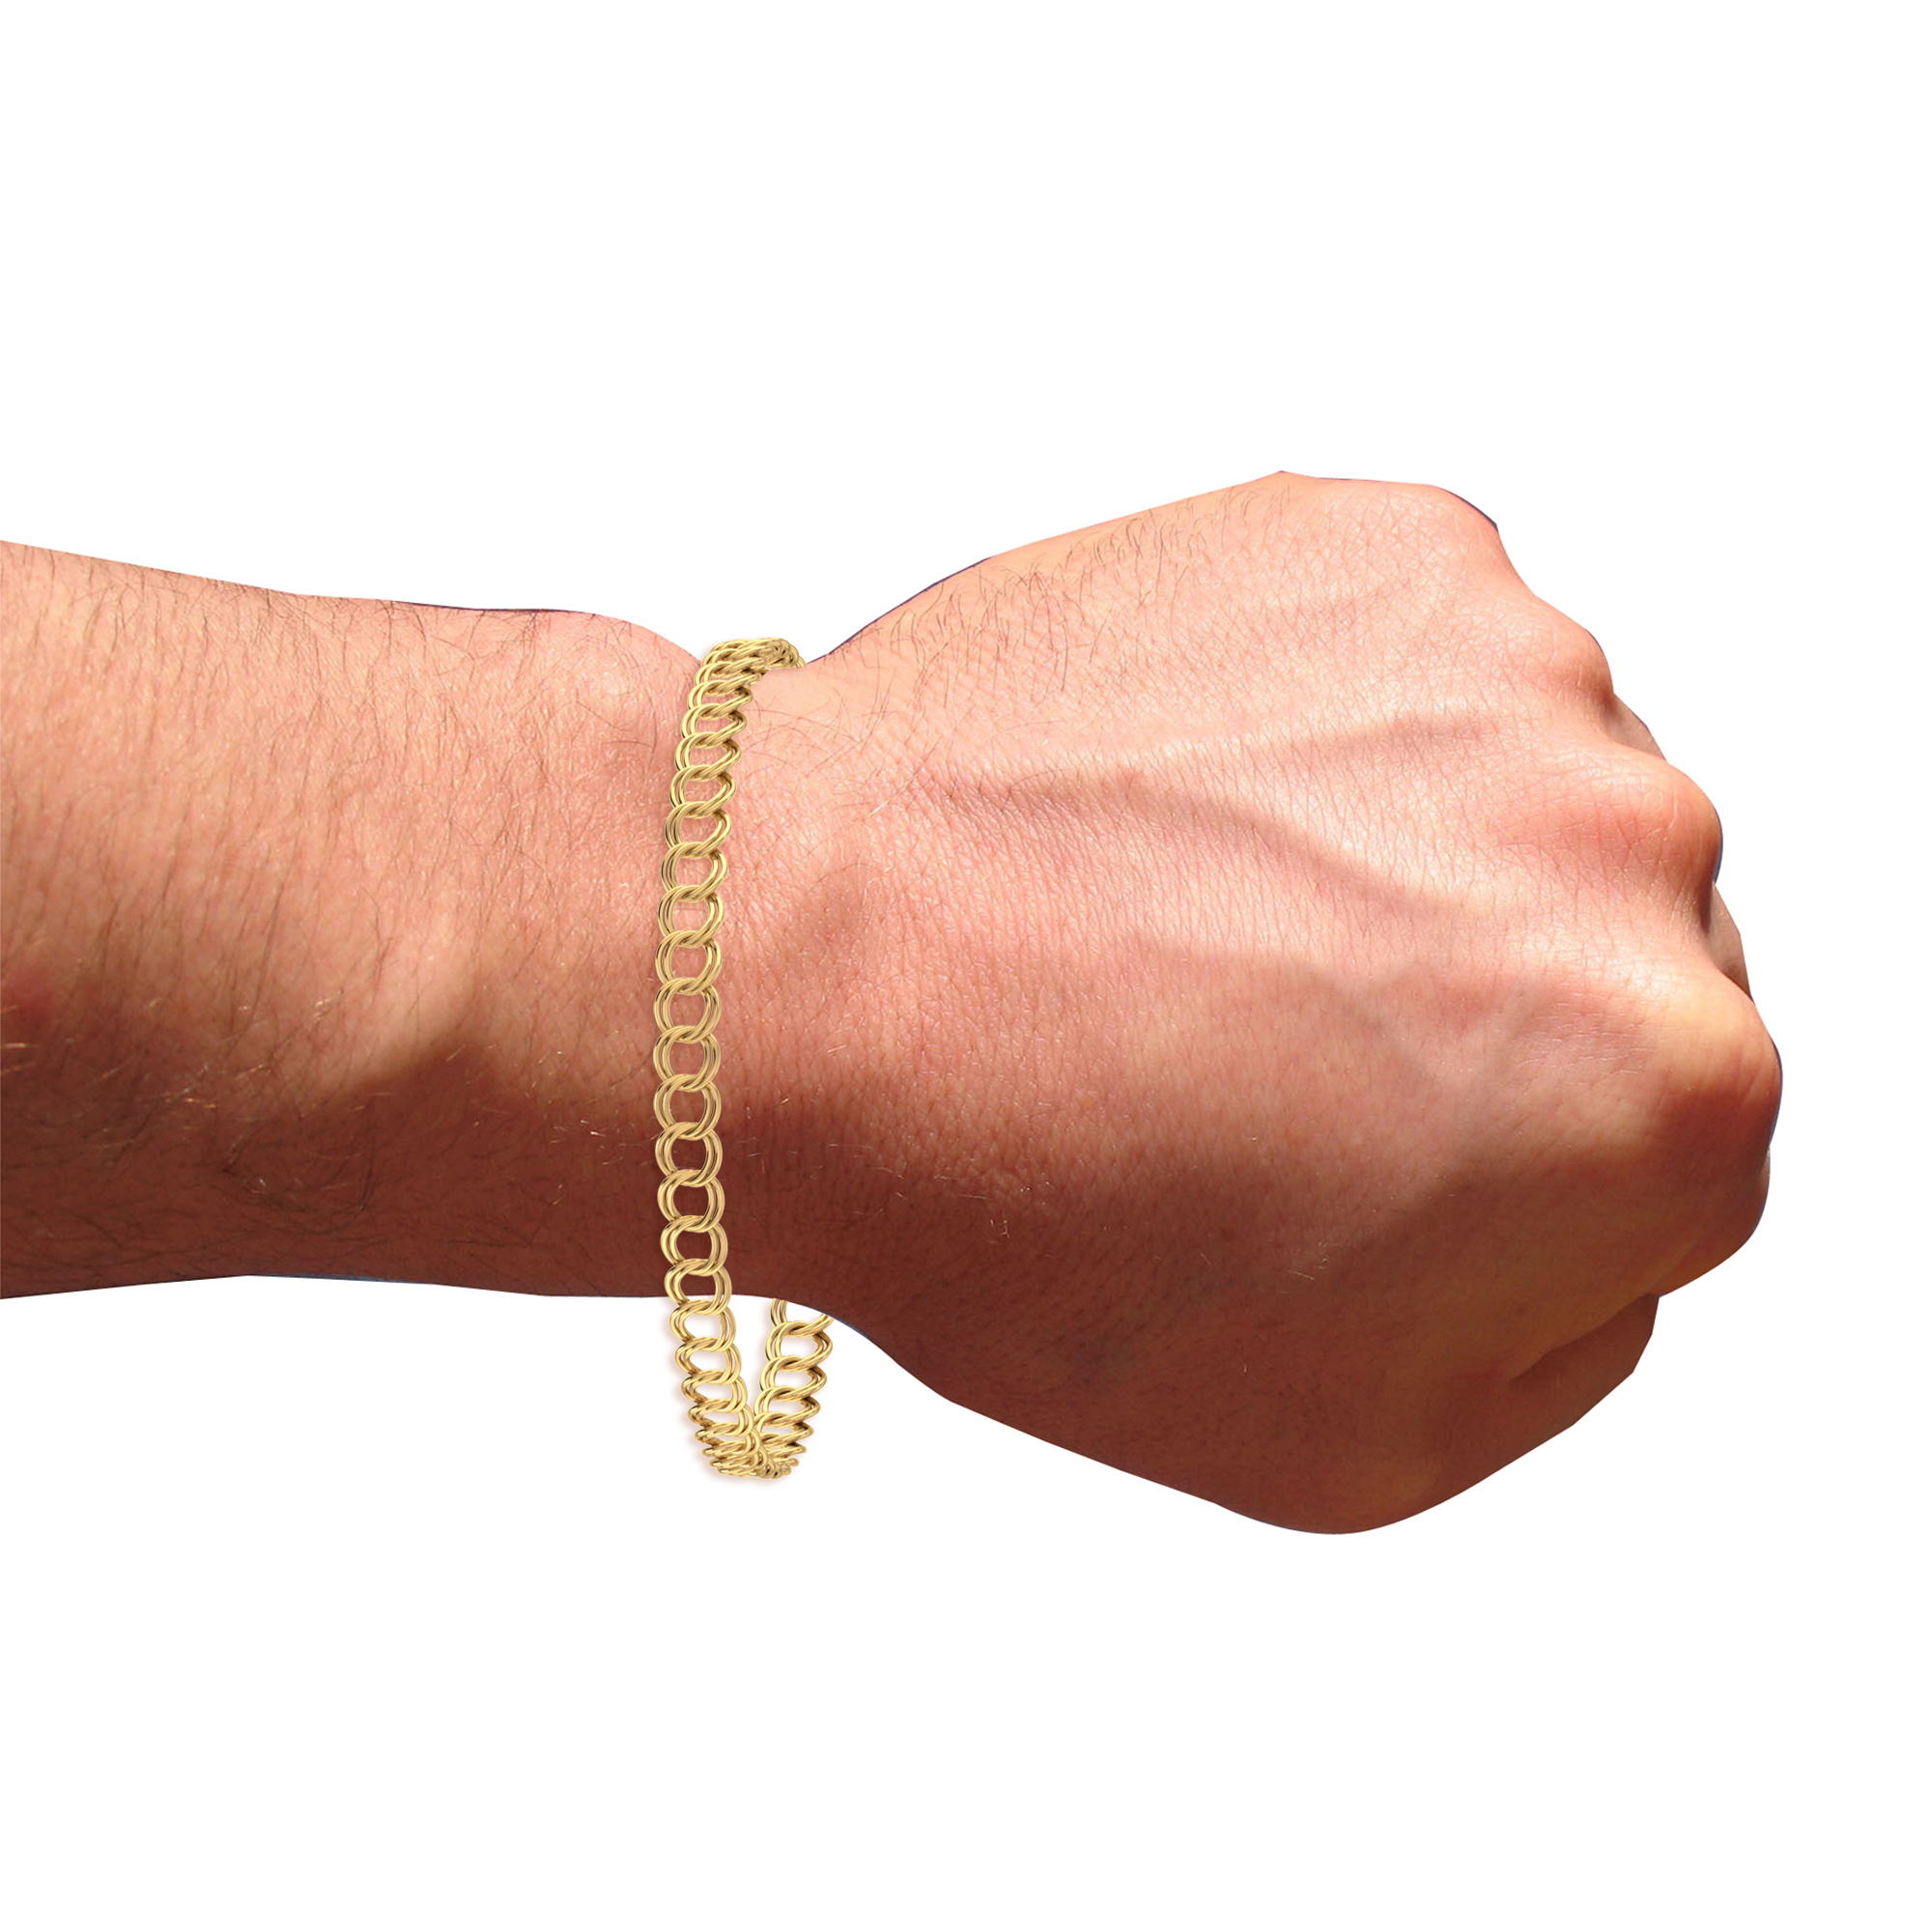 gold braceletgold bracelet for womenbracelet for womenbracelet gold bracelet designbracelet for ladieswomen braceletgold f